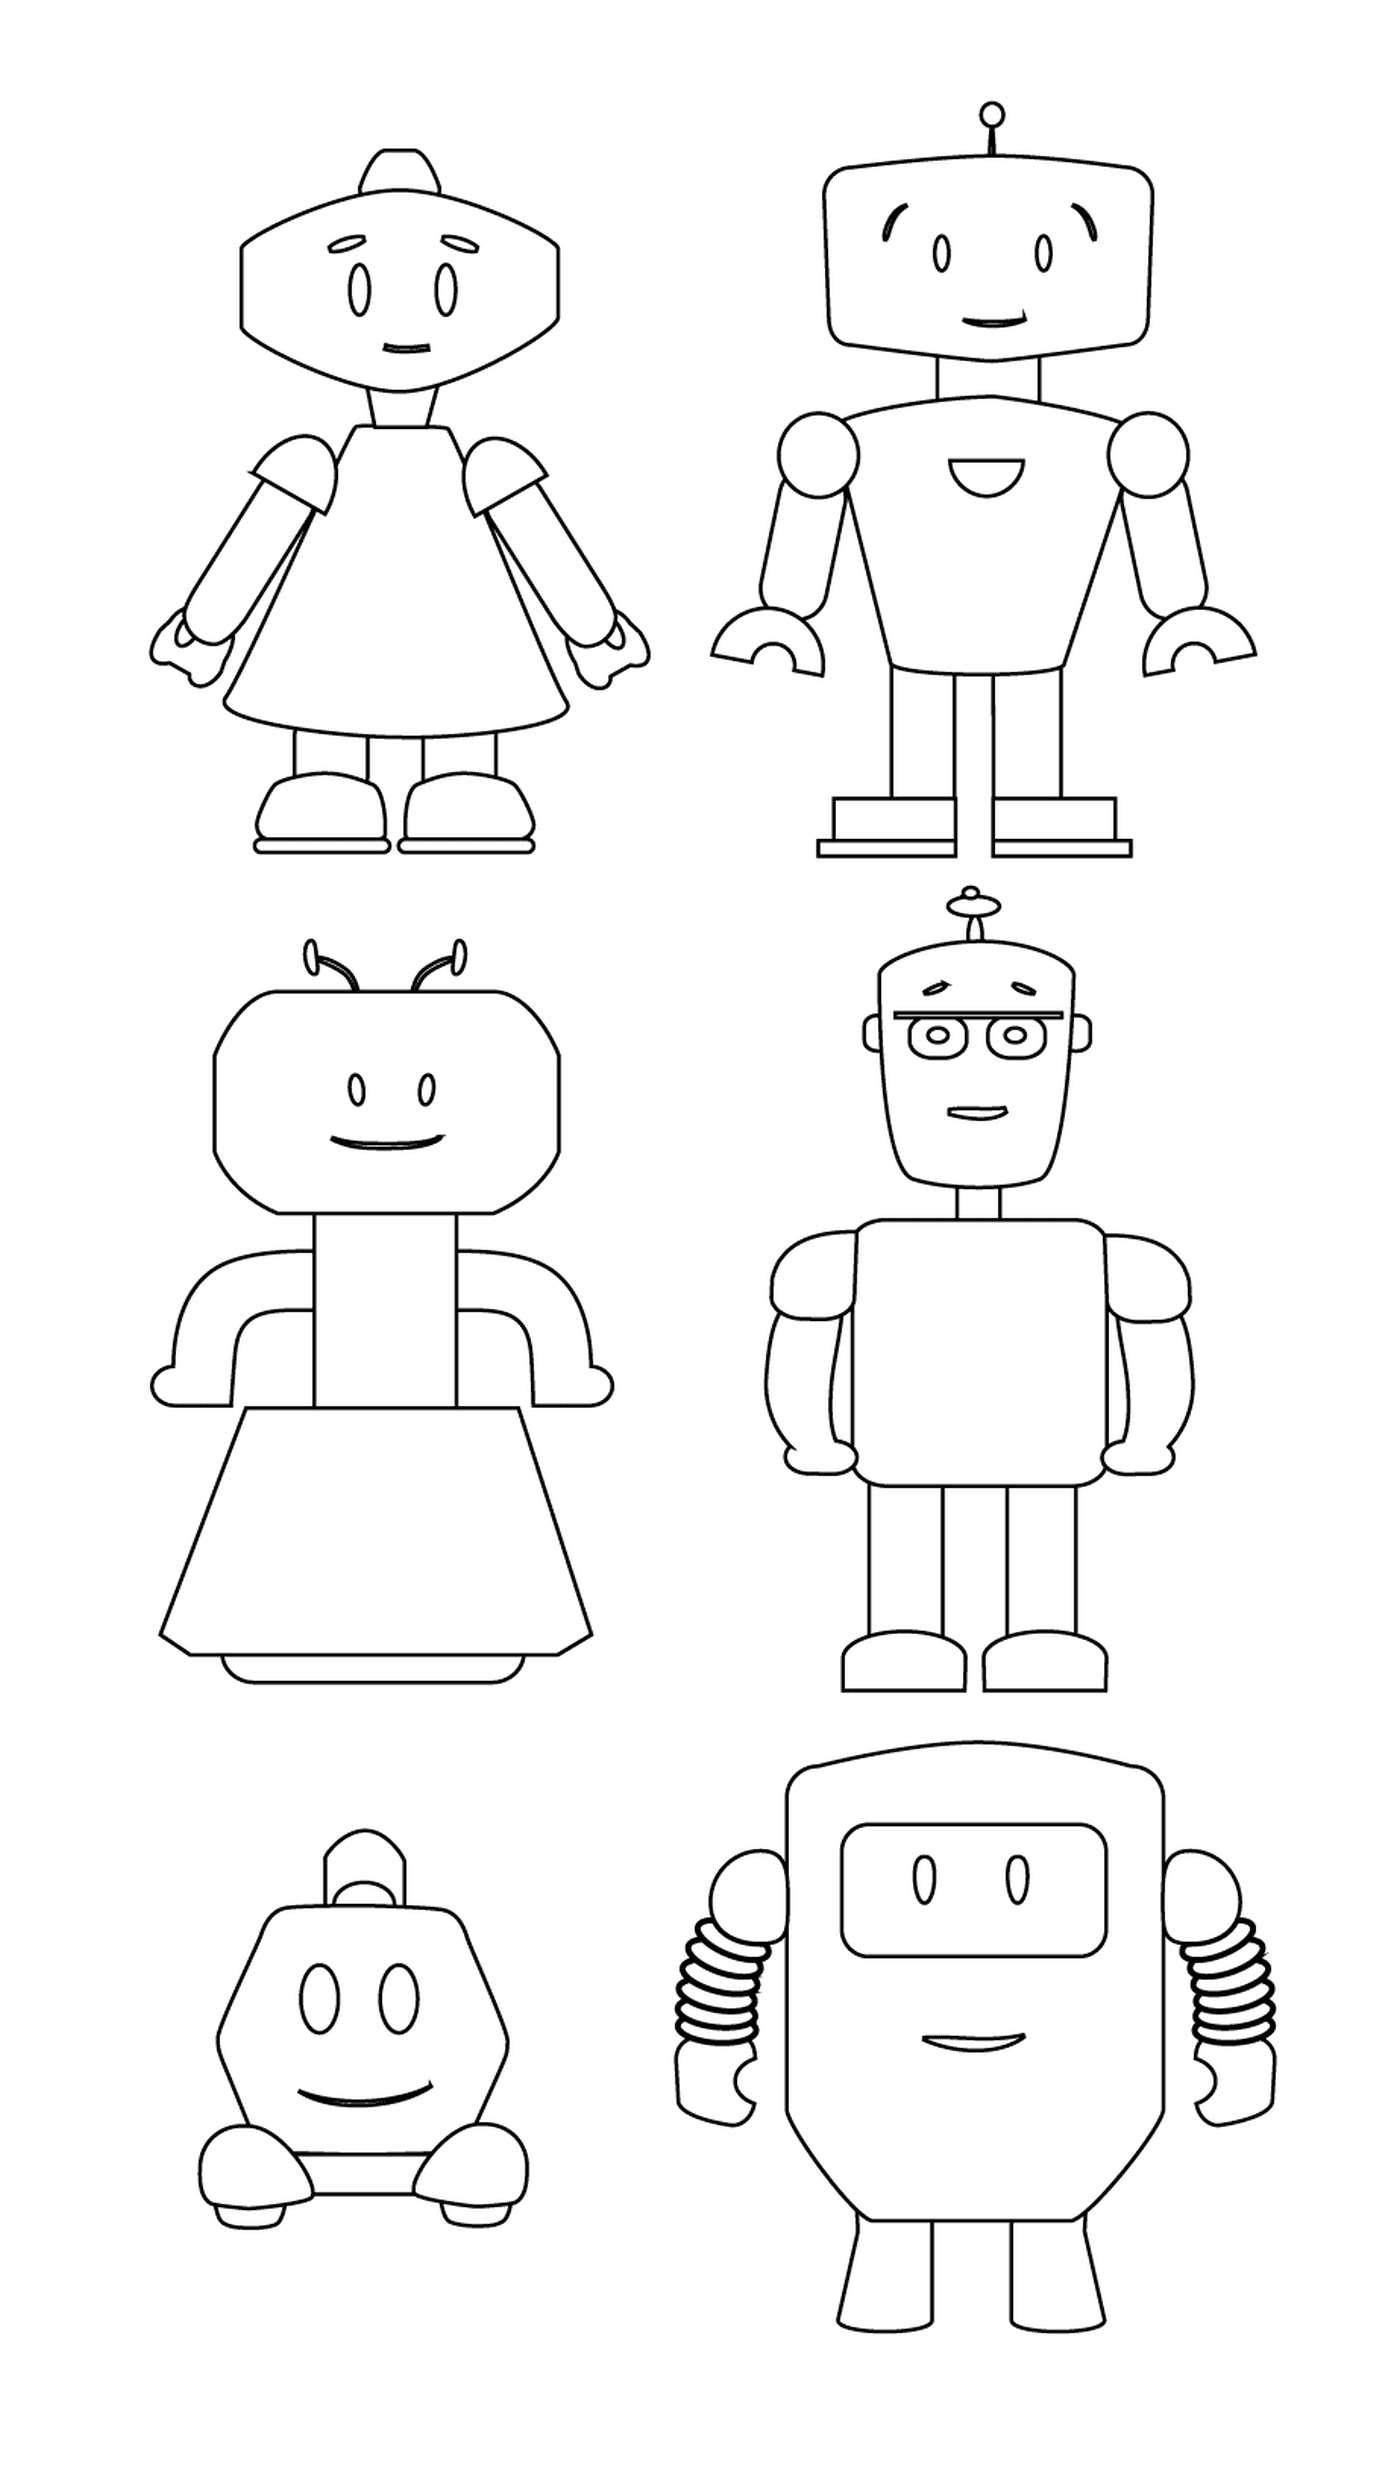  Famiglia di robot adorabili 